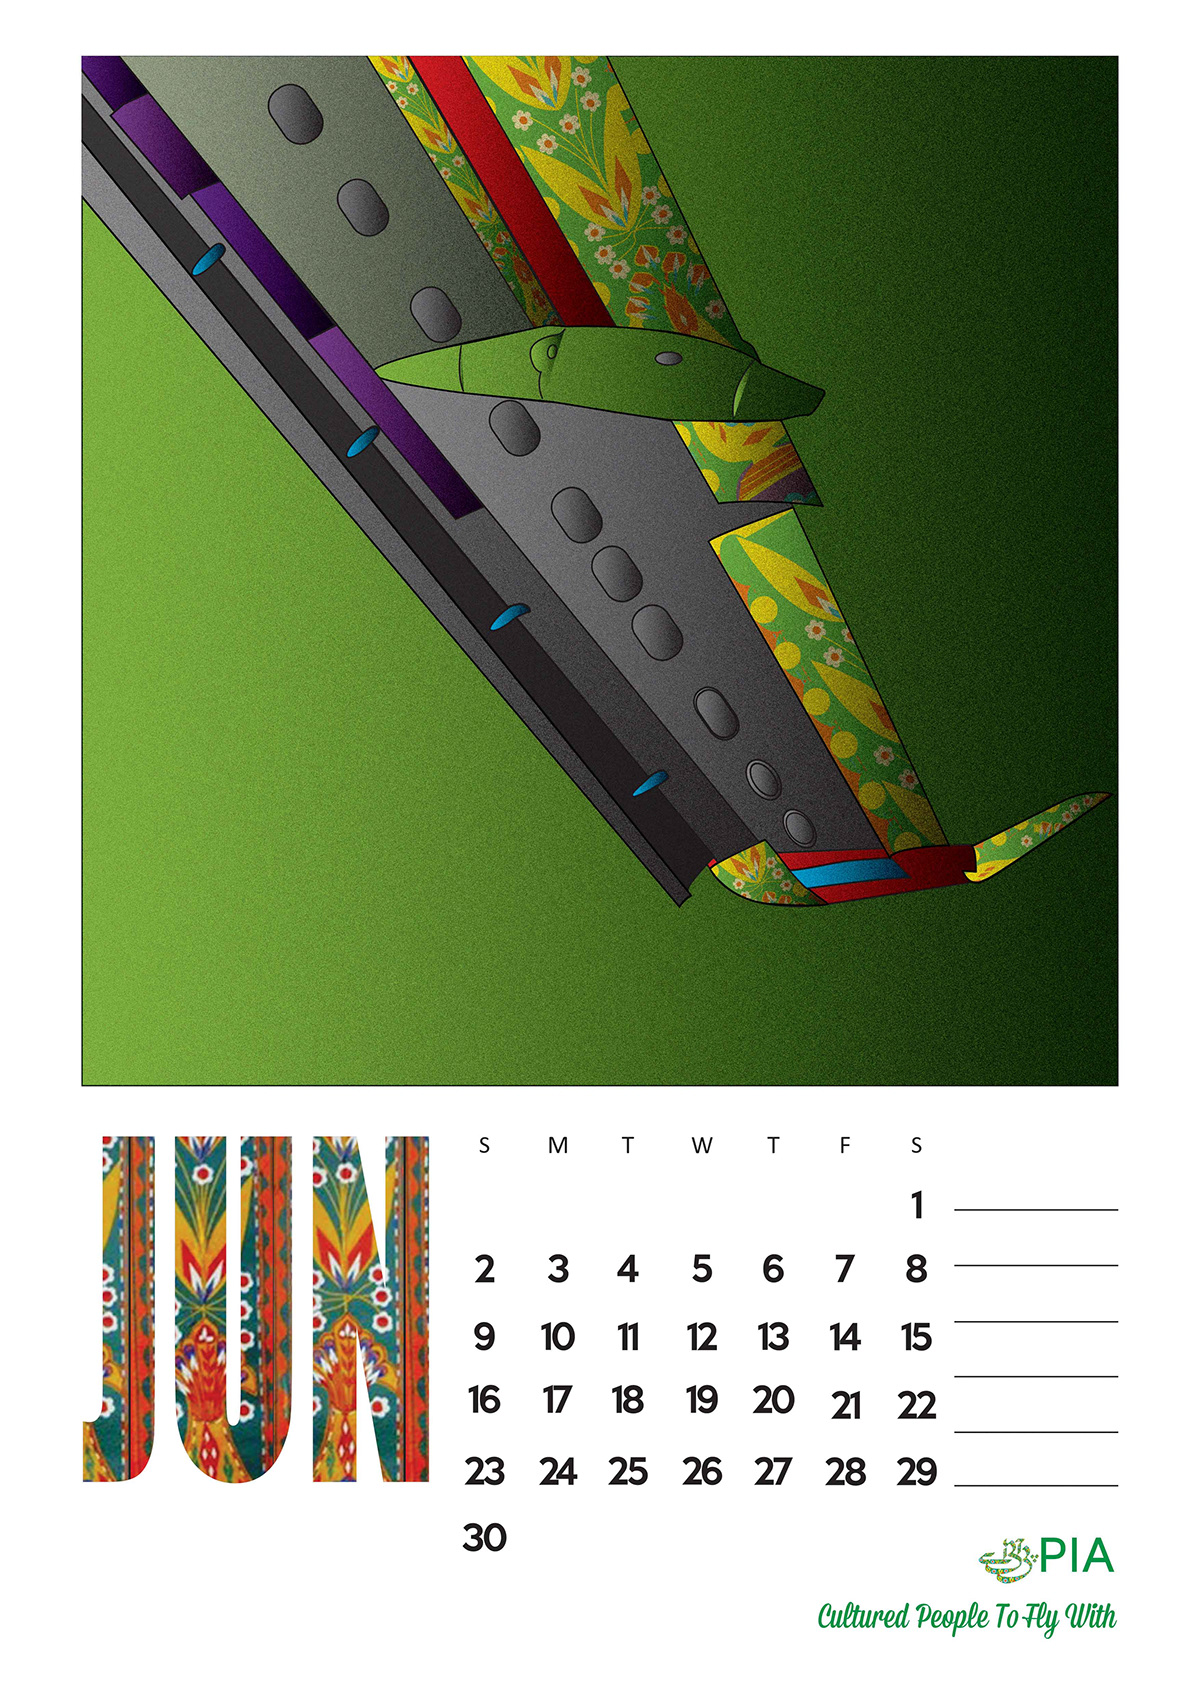 Pakistan  pia  Airlines  Usman  branding  TRUCK ART  2013  calendar 